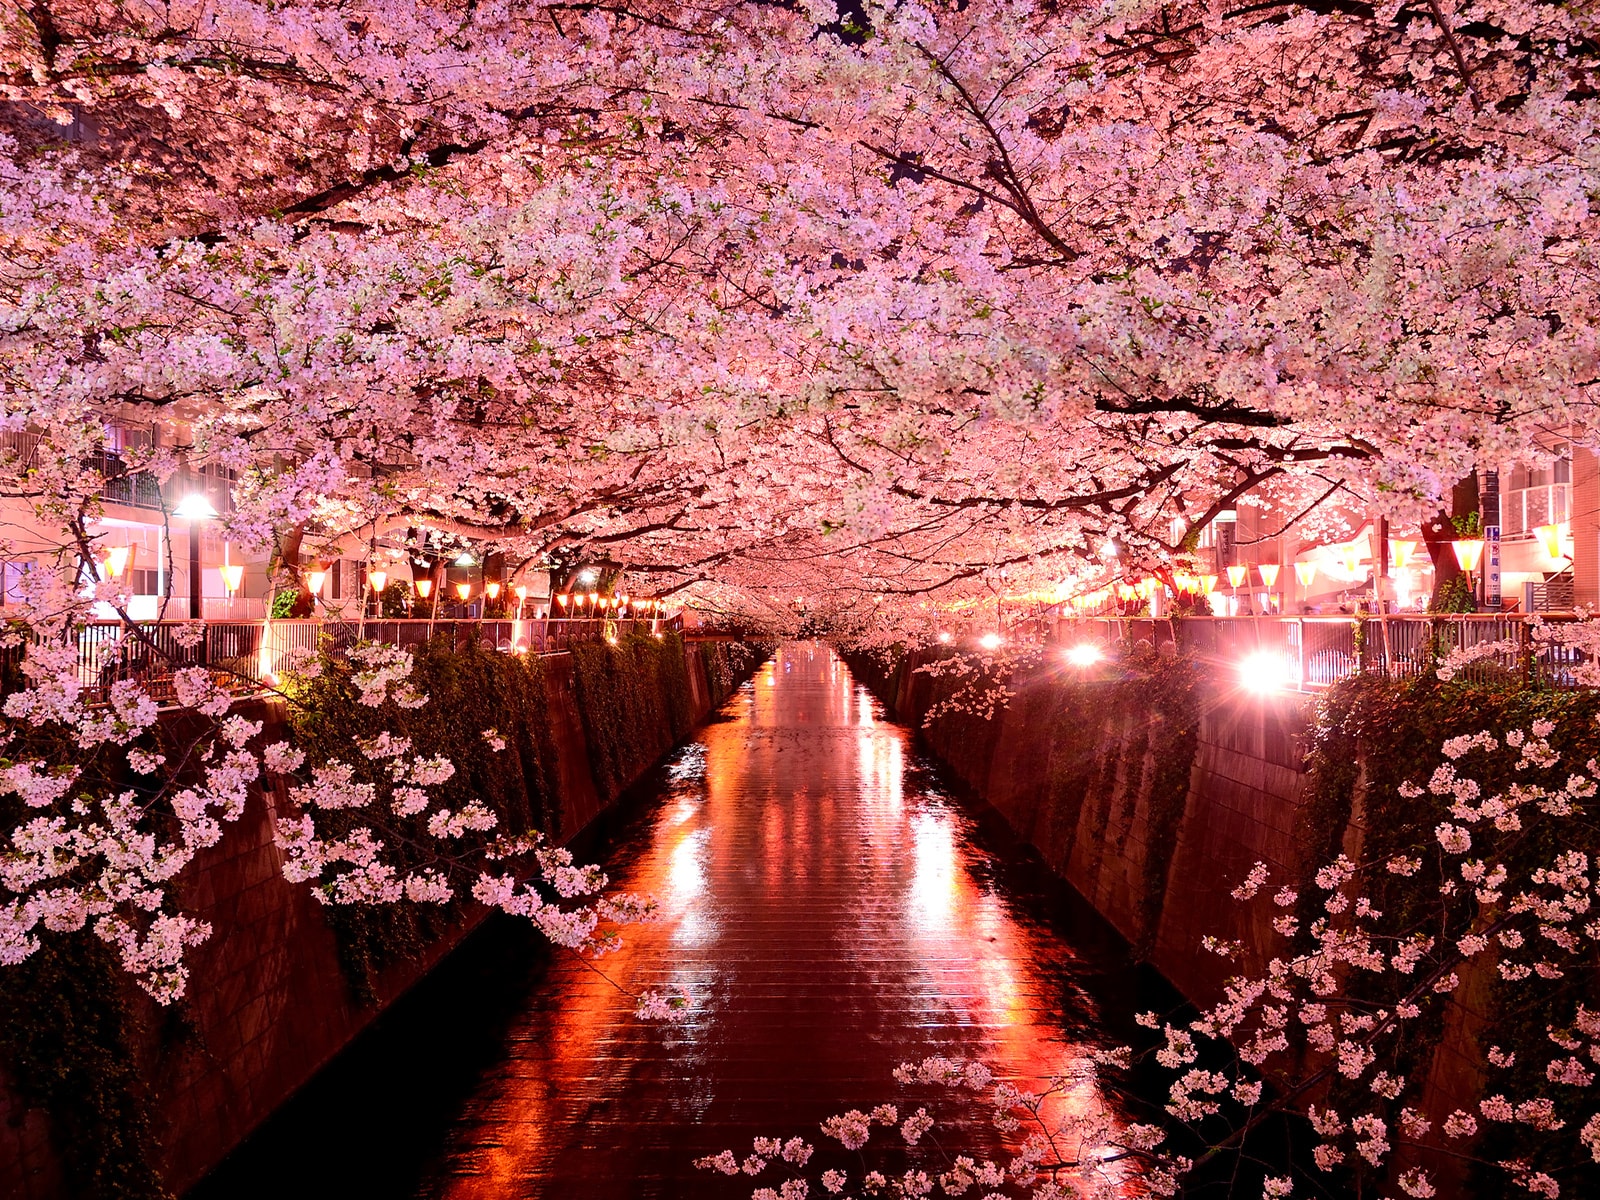 「夜桜がきれい」だと思う都道府県ランキング